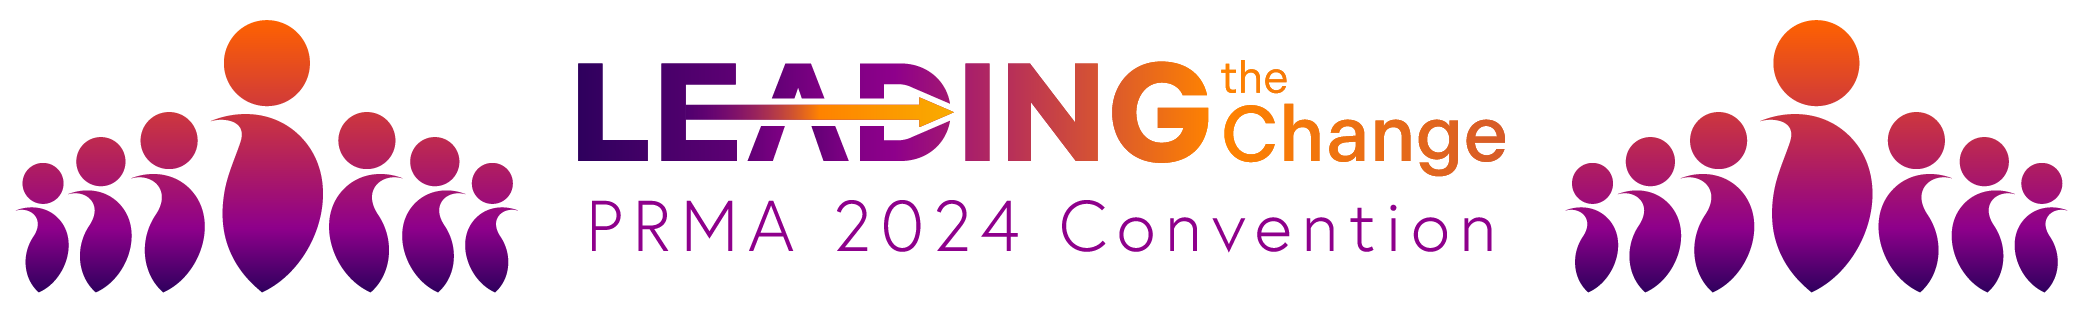 CONV 2024 Logo Webpage Header-01